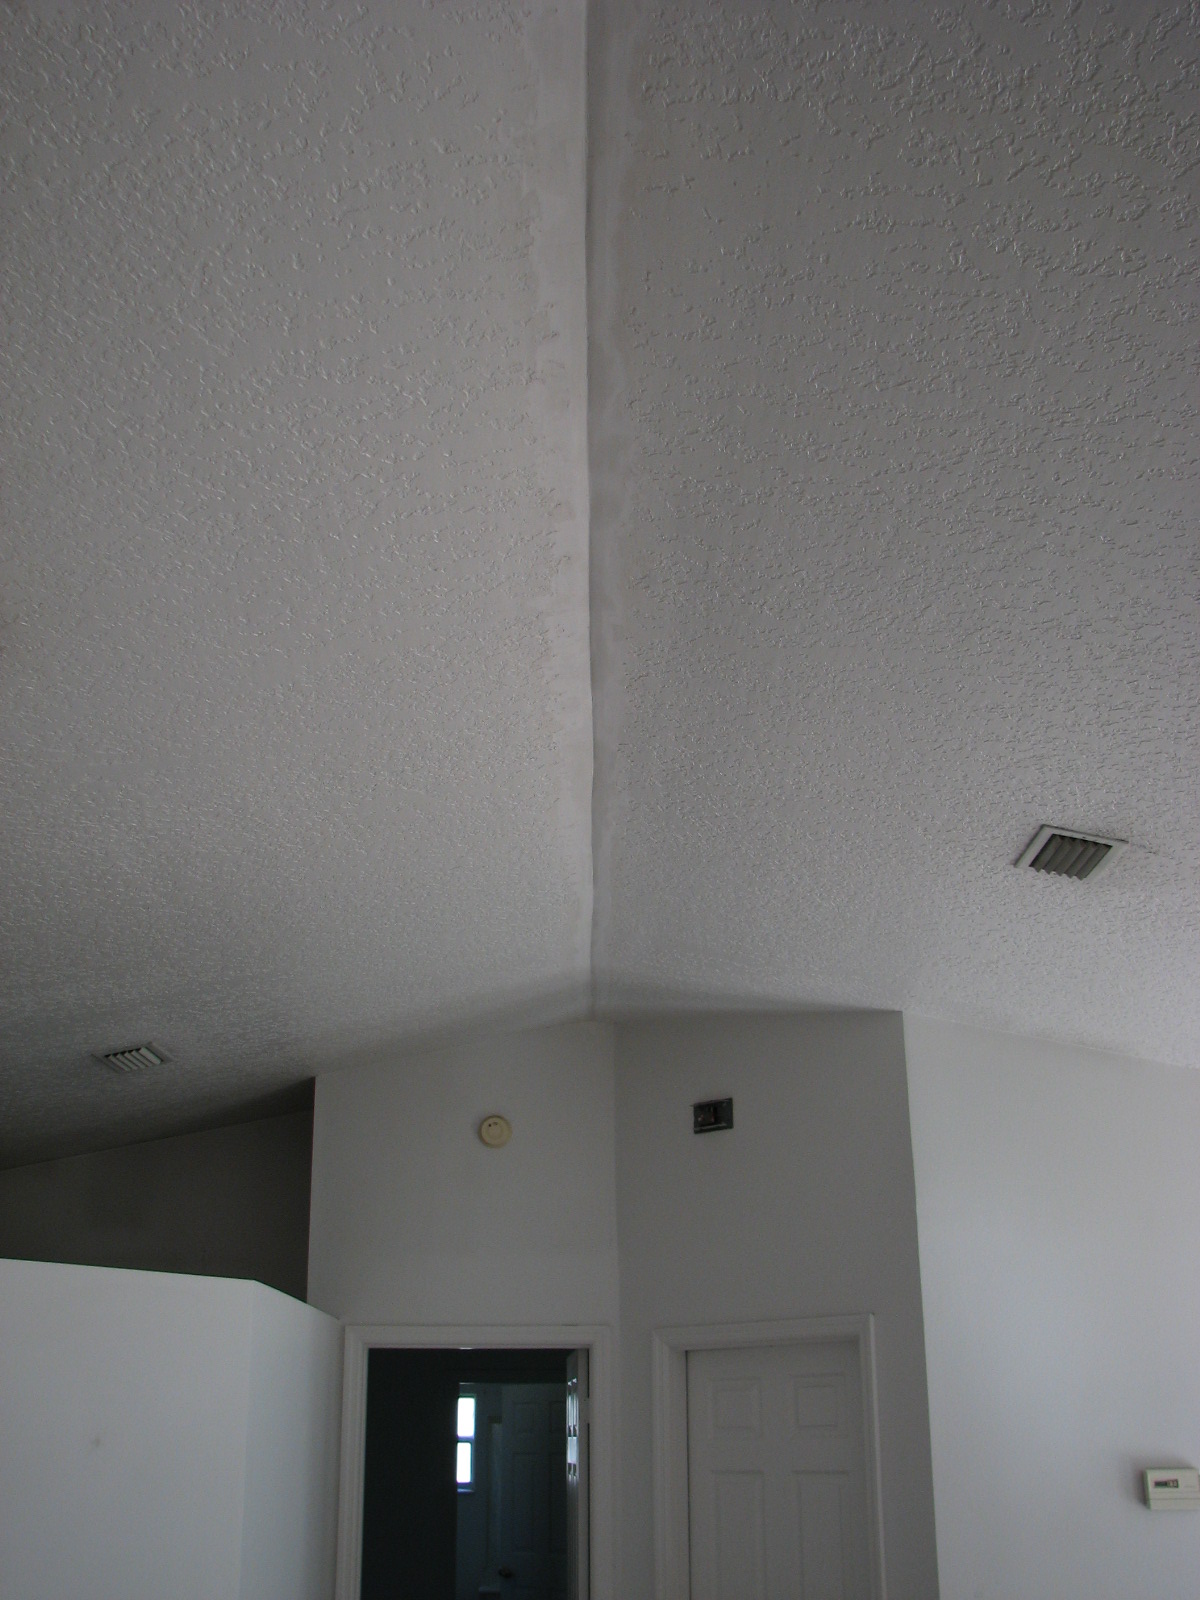 Ceiling Repair